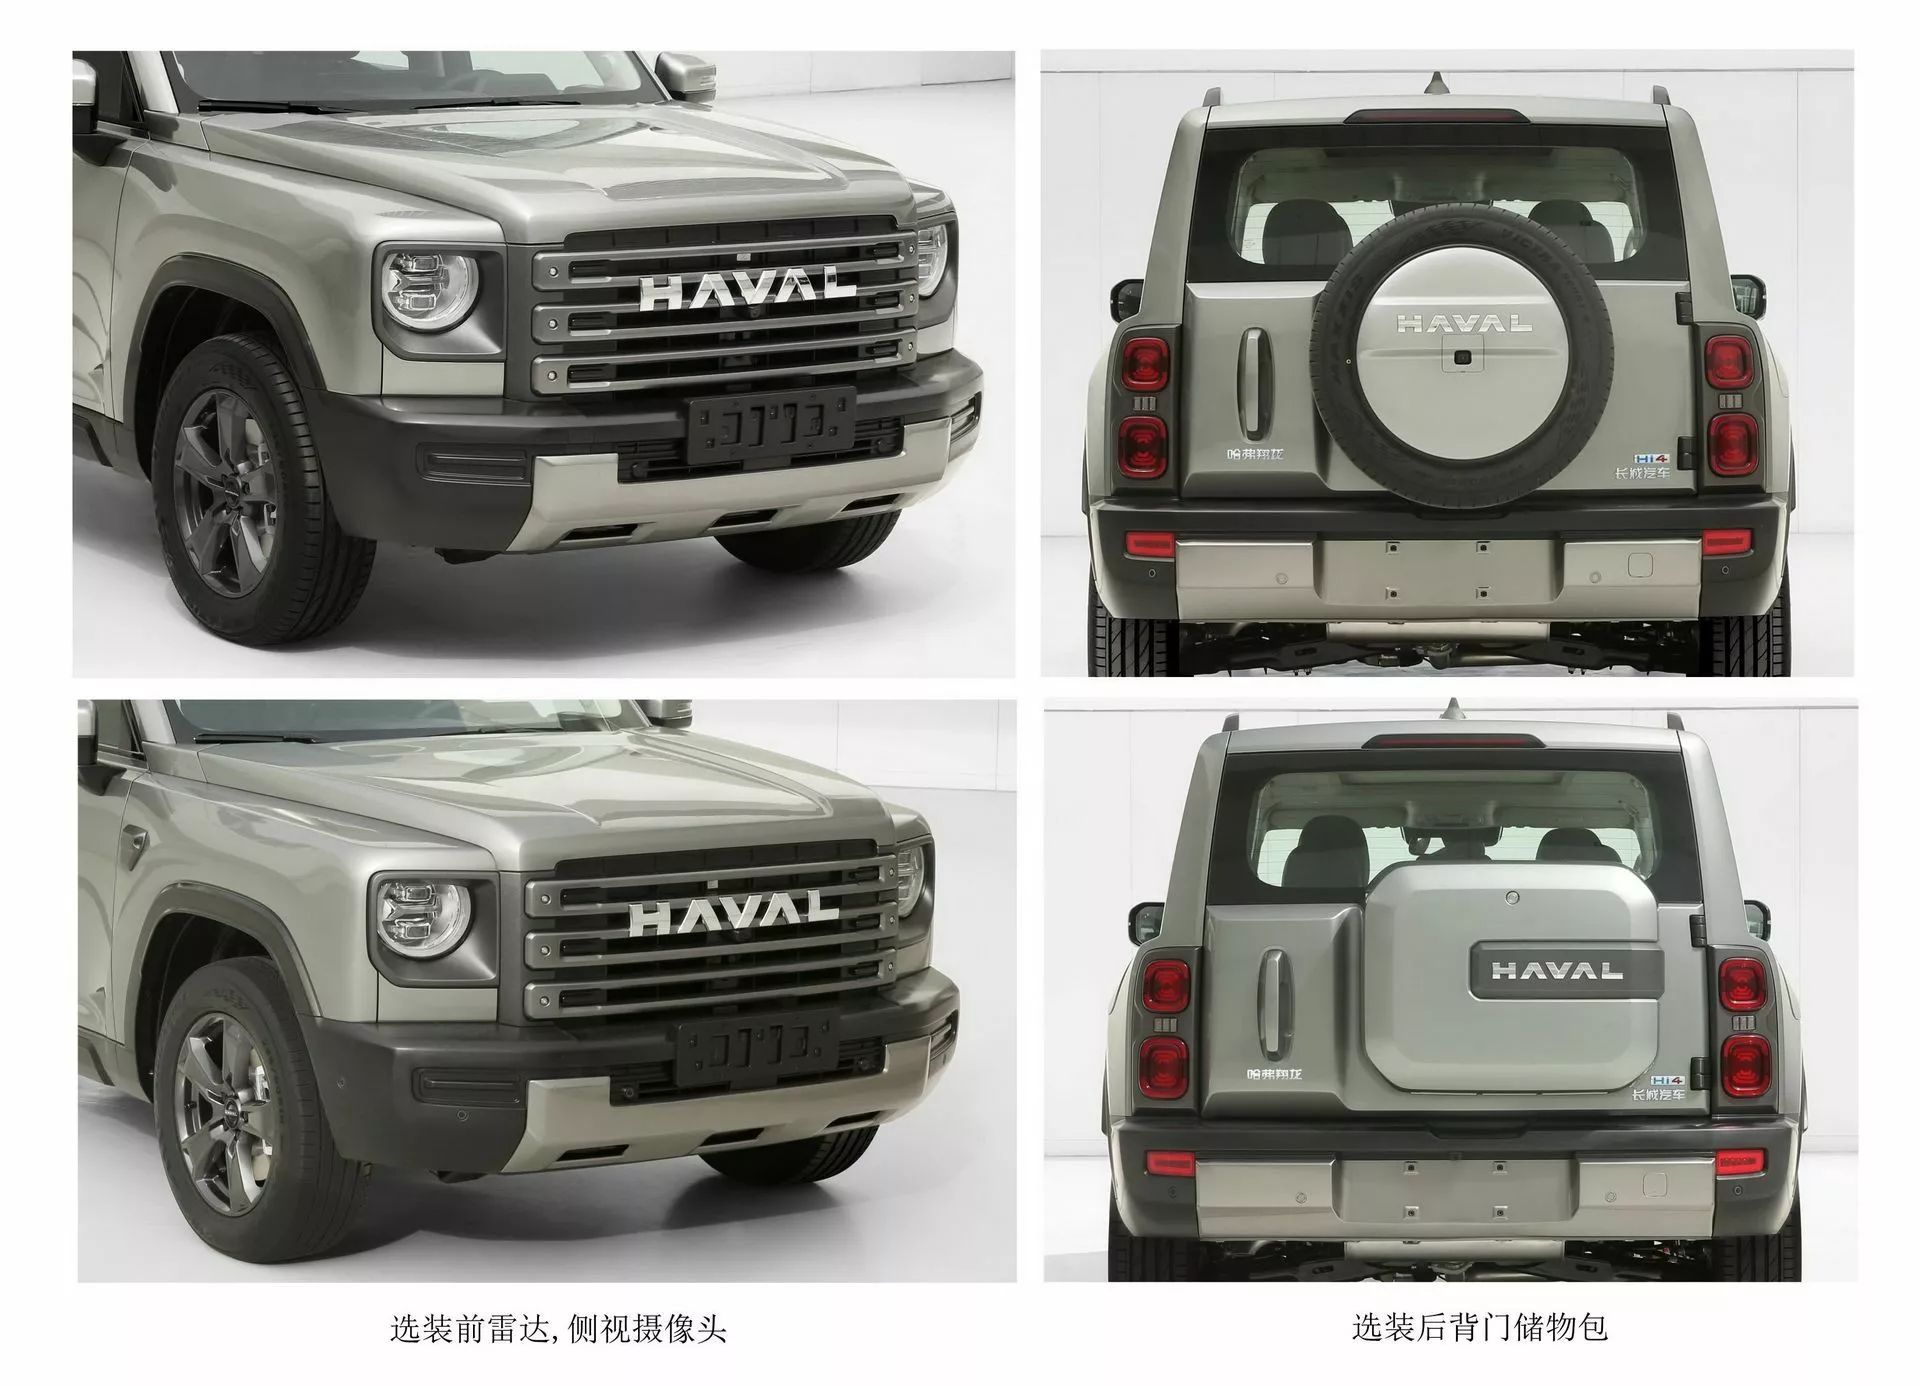 هافال شيانغ لونغ هي SUV صينية جديدة كلياً بتصميم عضلي ومحركات هايبرد 3